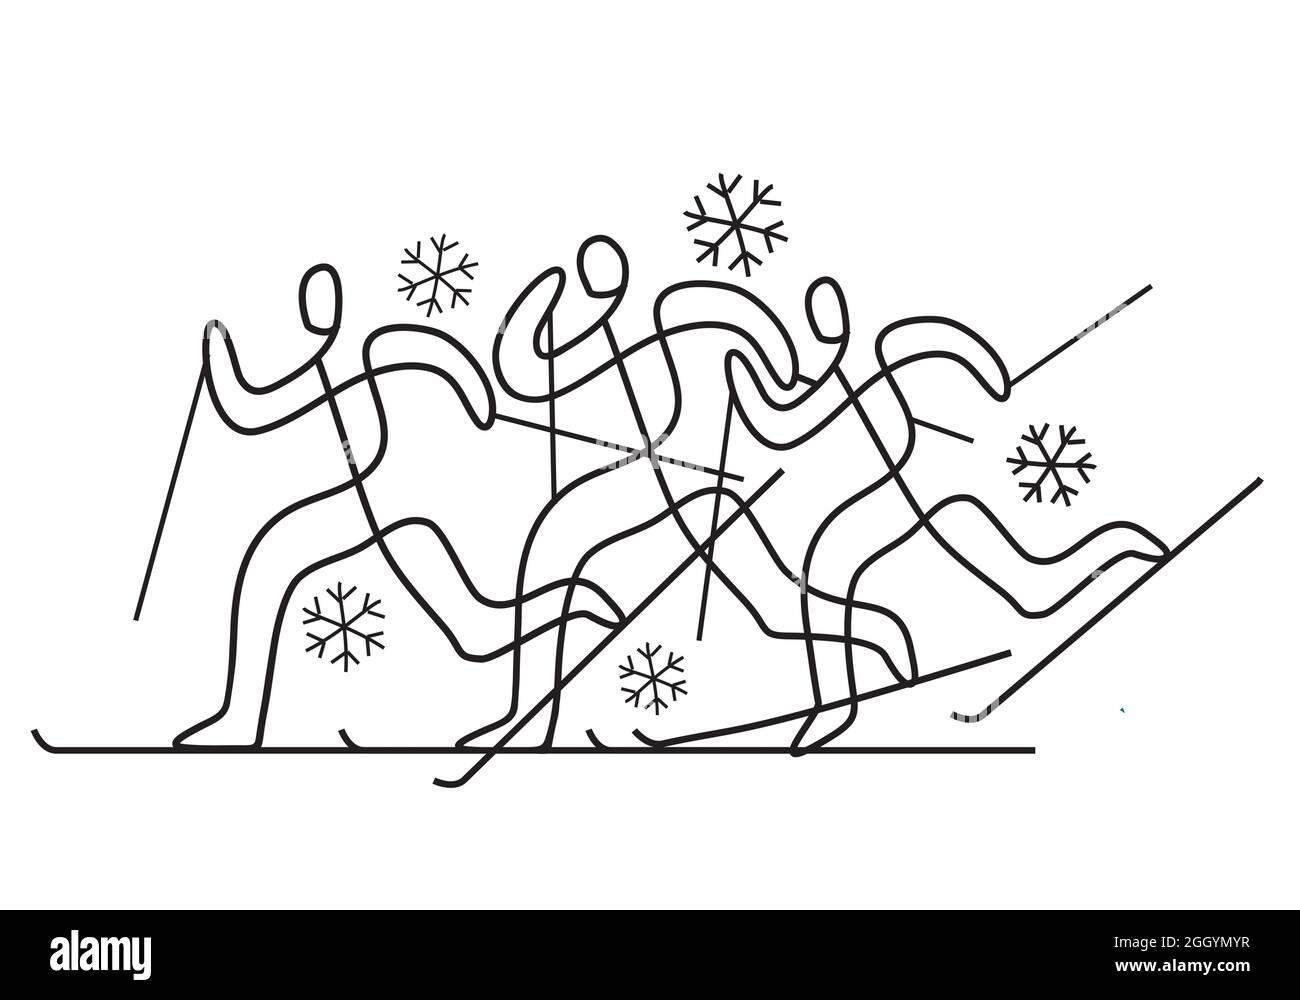 Skilanglauf. Dekorative Illustration der nordischen Skikonkurrenten. Design der kontinuierlichen Linienzeichnung. Vektor verfügbar. Stock Vektor